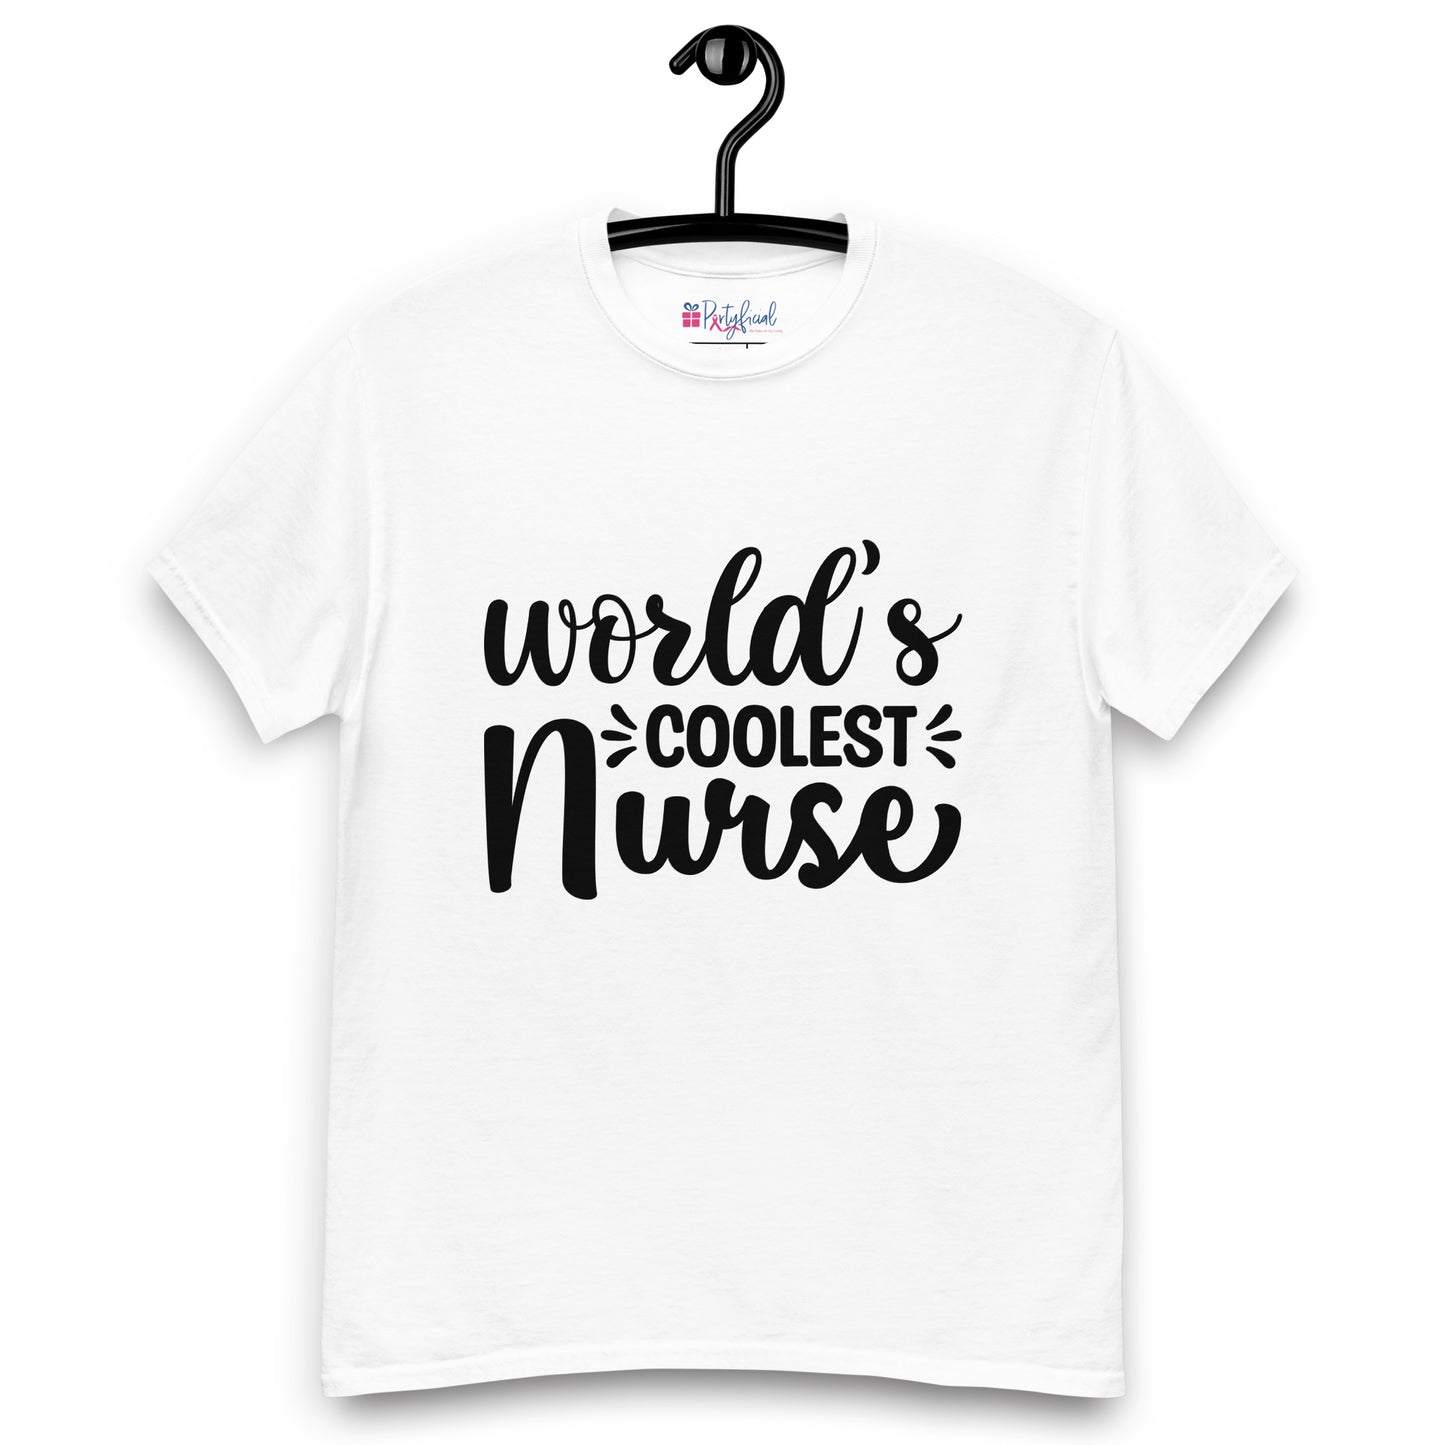 World's Coolest Nurse tee